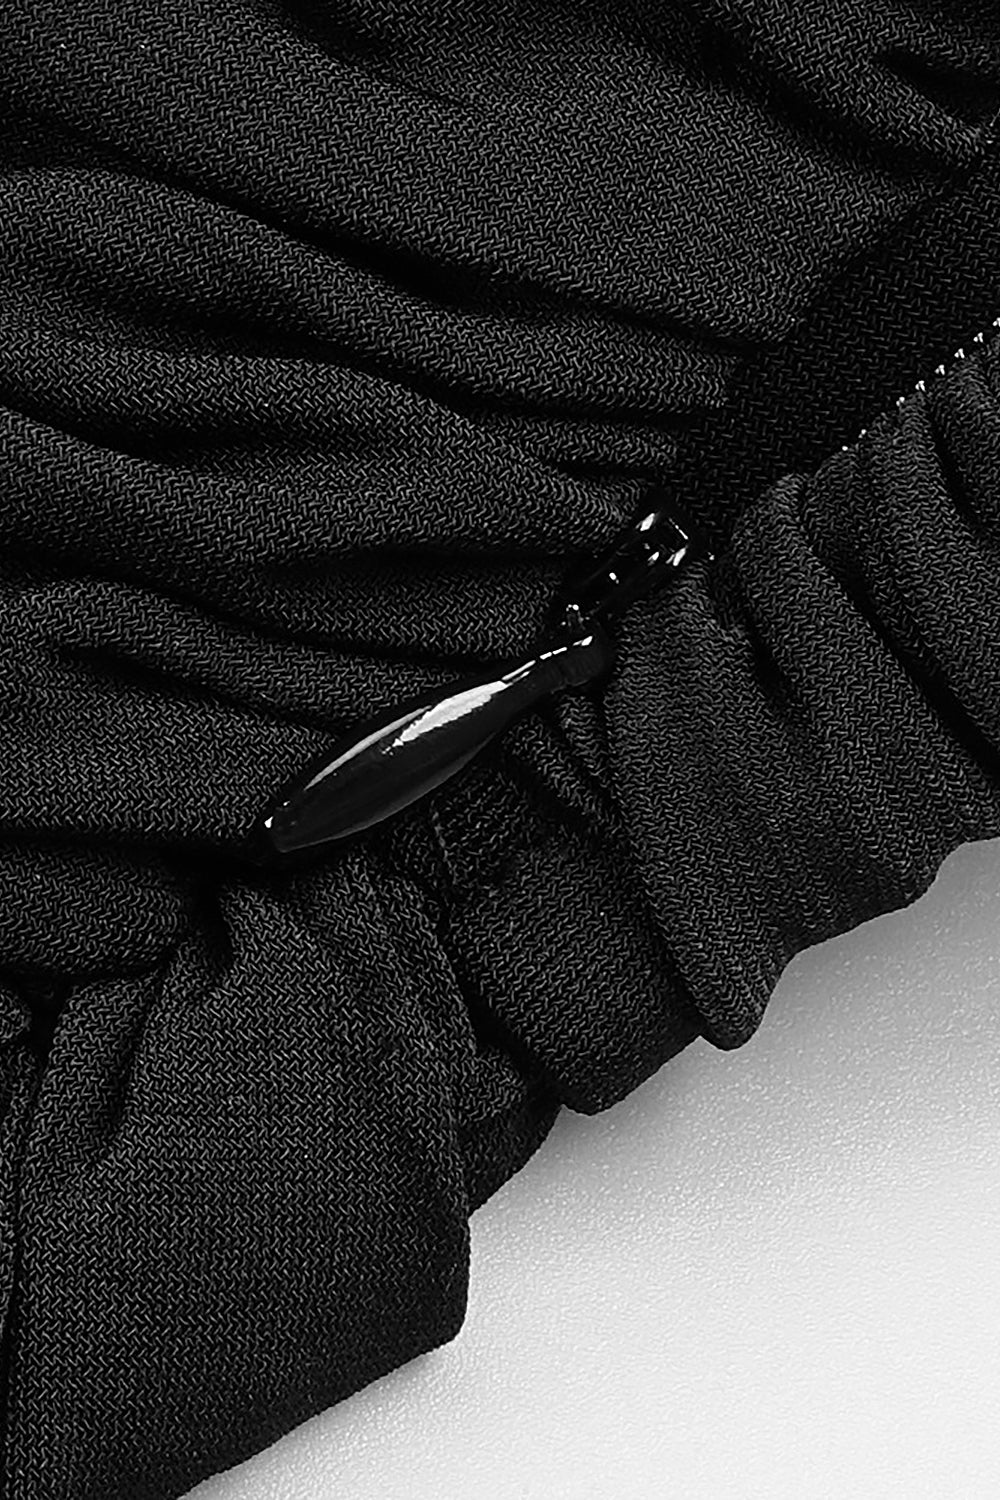 Robe froncée à bretelles et fente sur la cuisse, noire